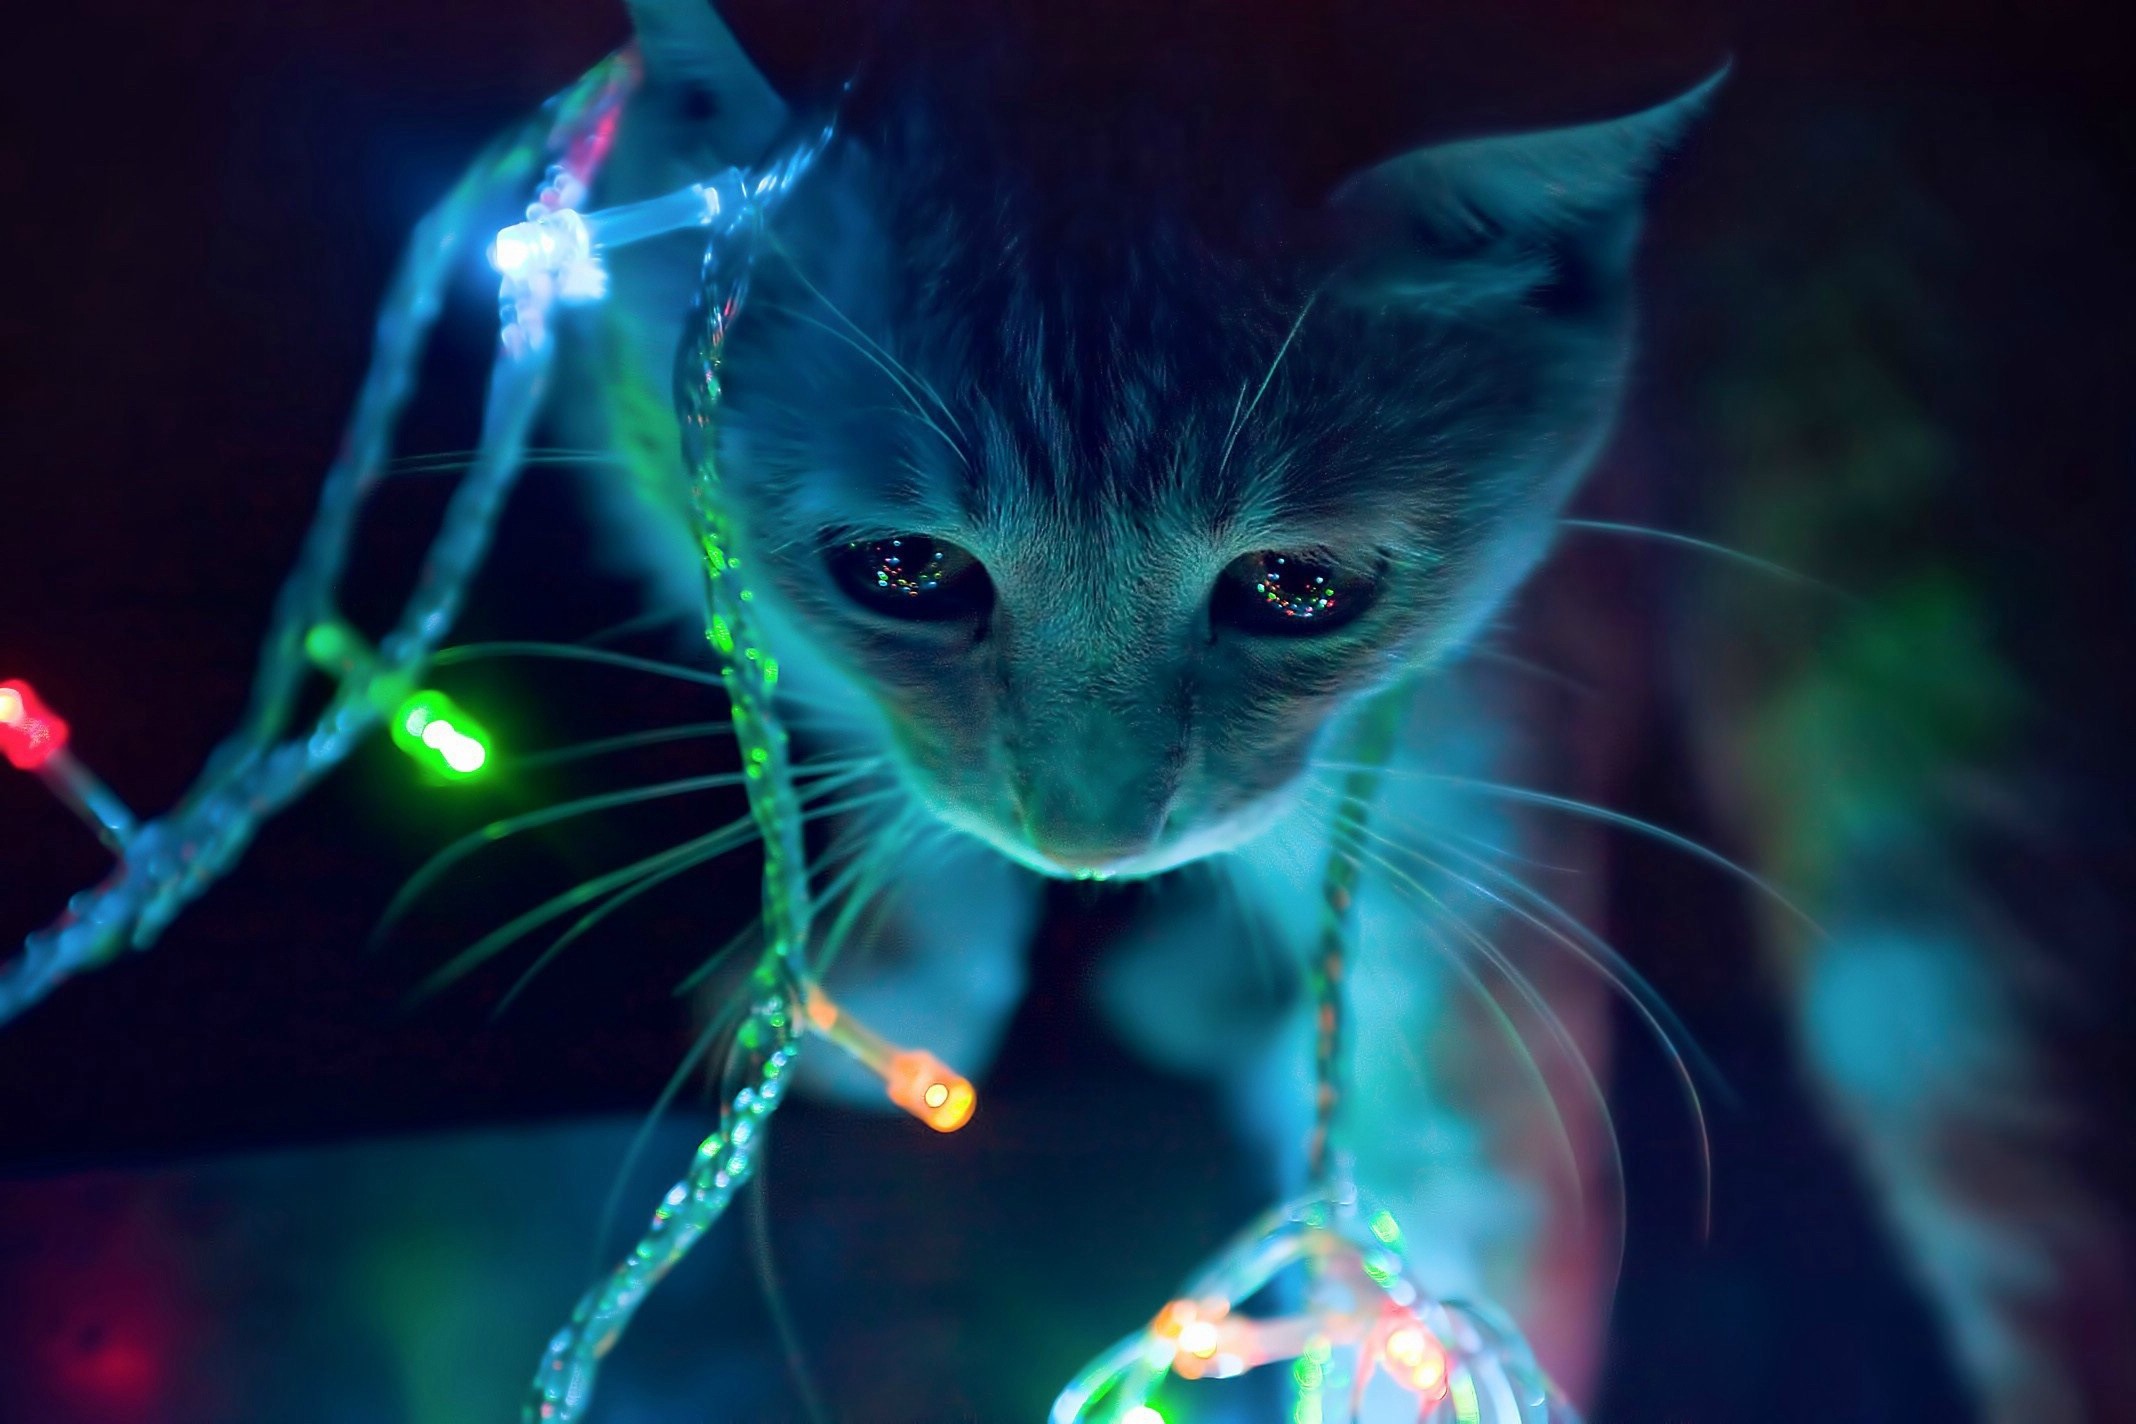  cat  neon  lights macro Wallpapers HD Desktop and Mobile 